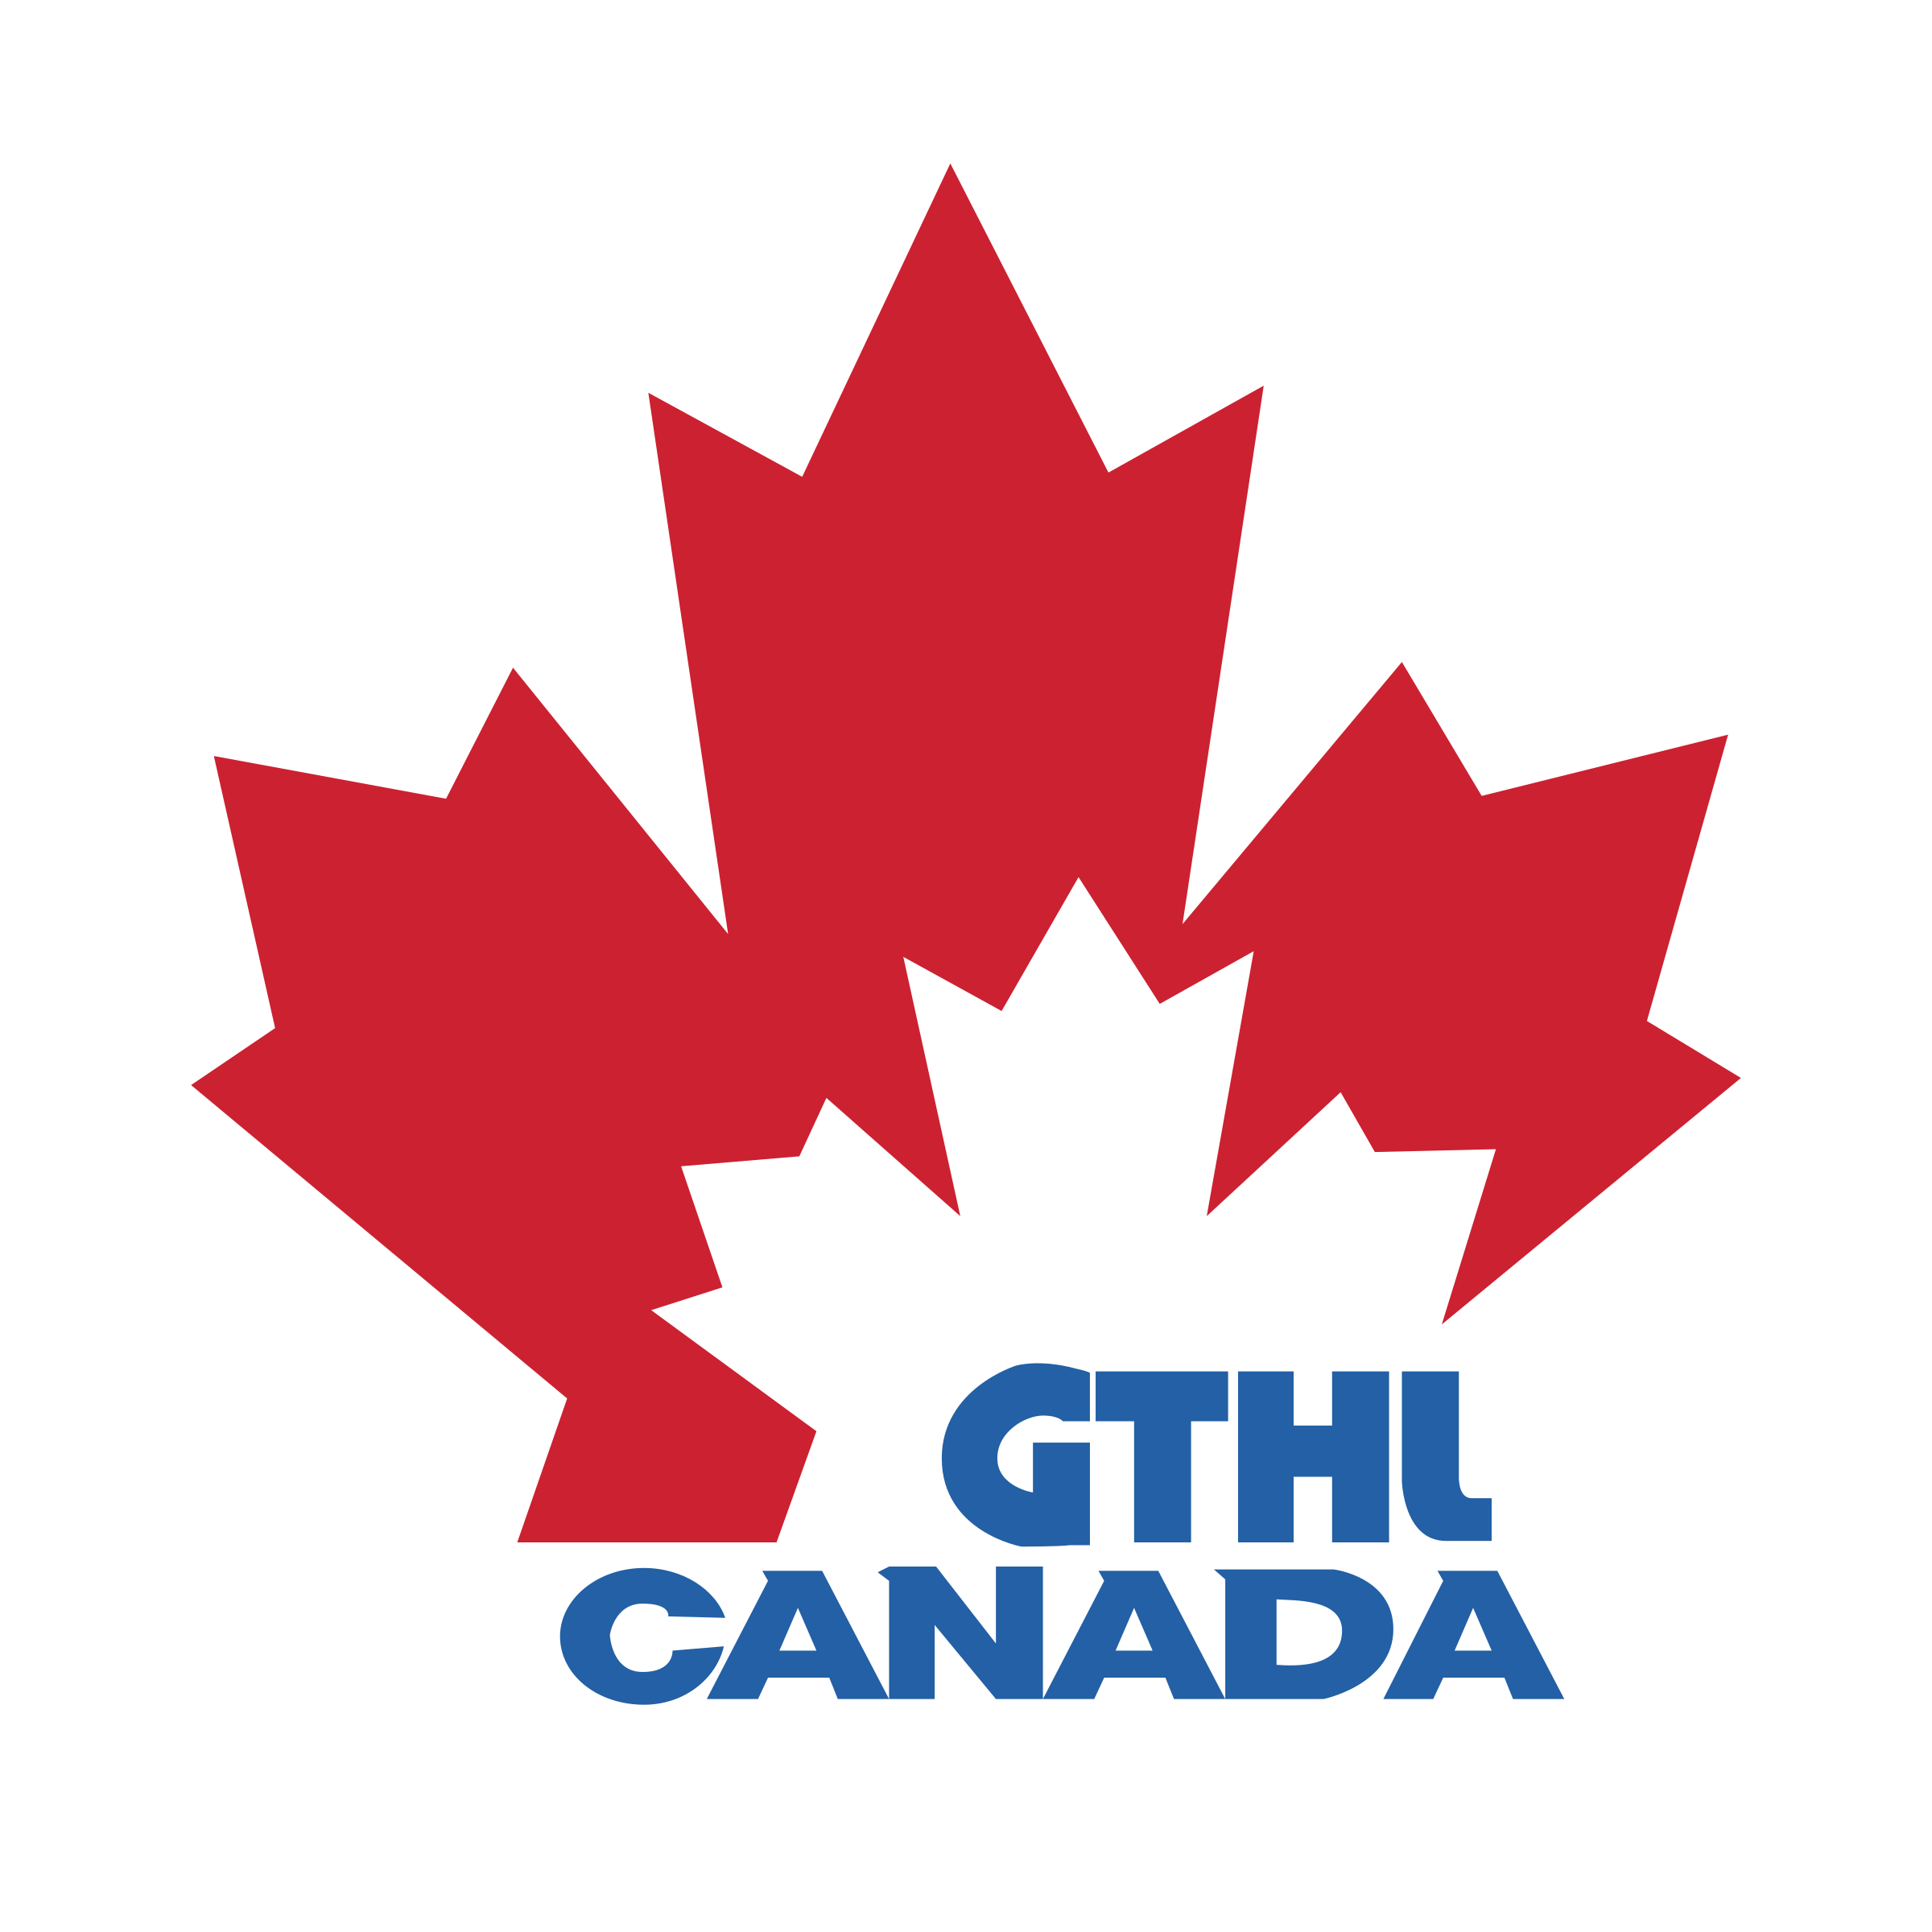 gthl-canada-logo-png-transparent